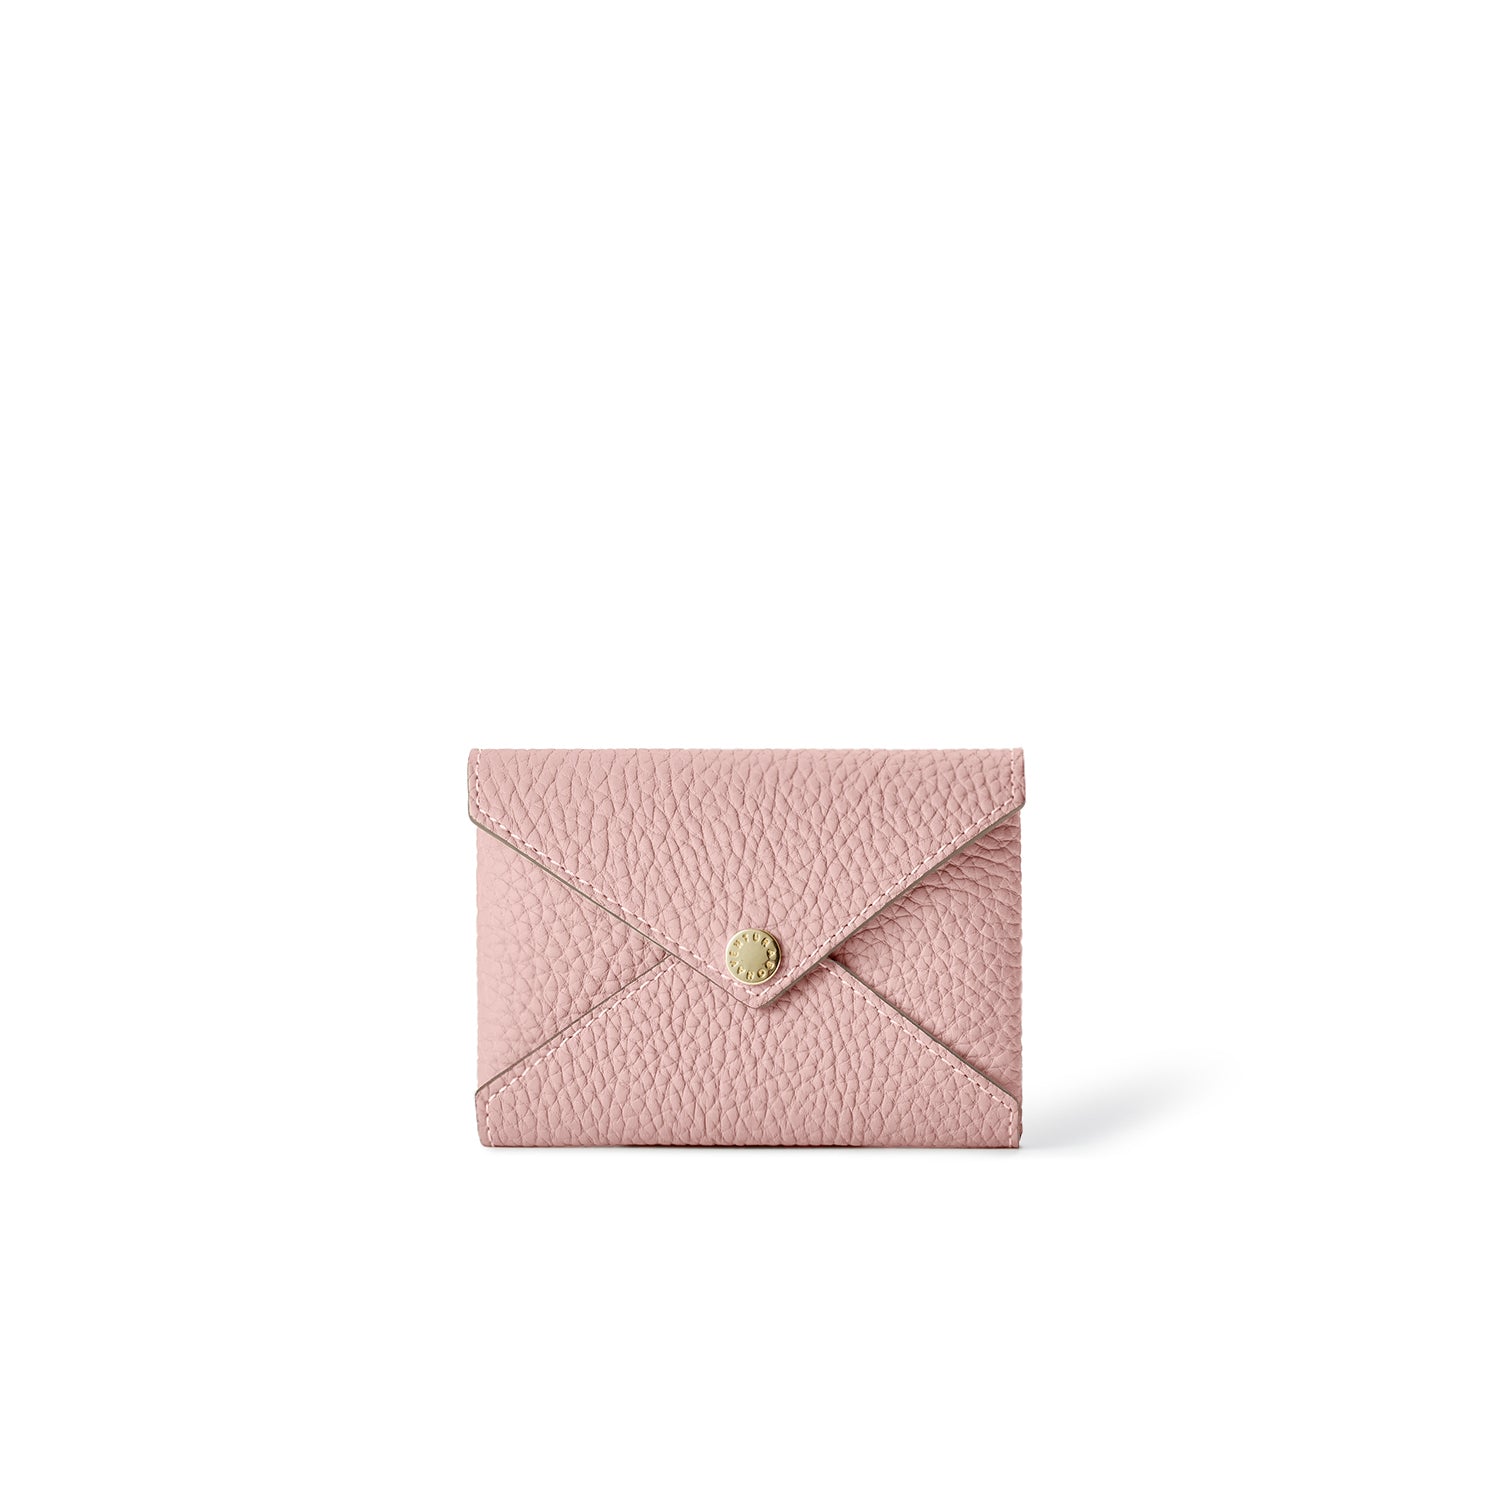 Envelope card case in shrink leather